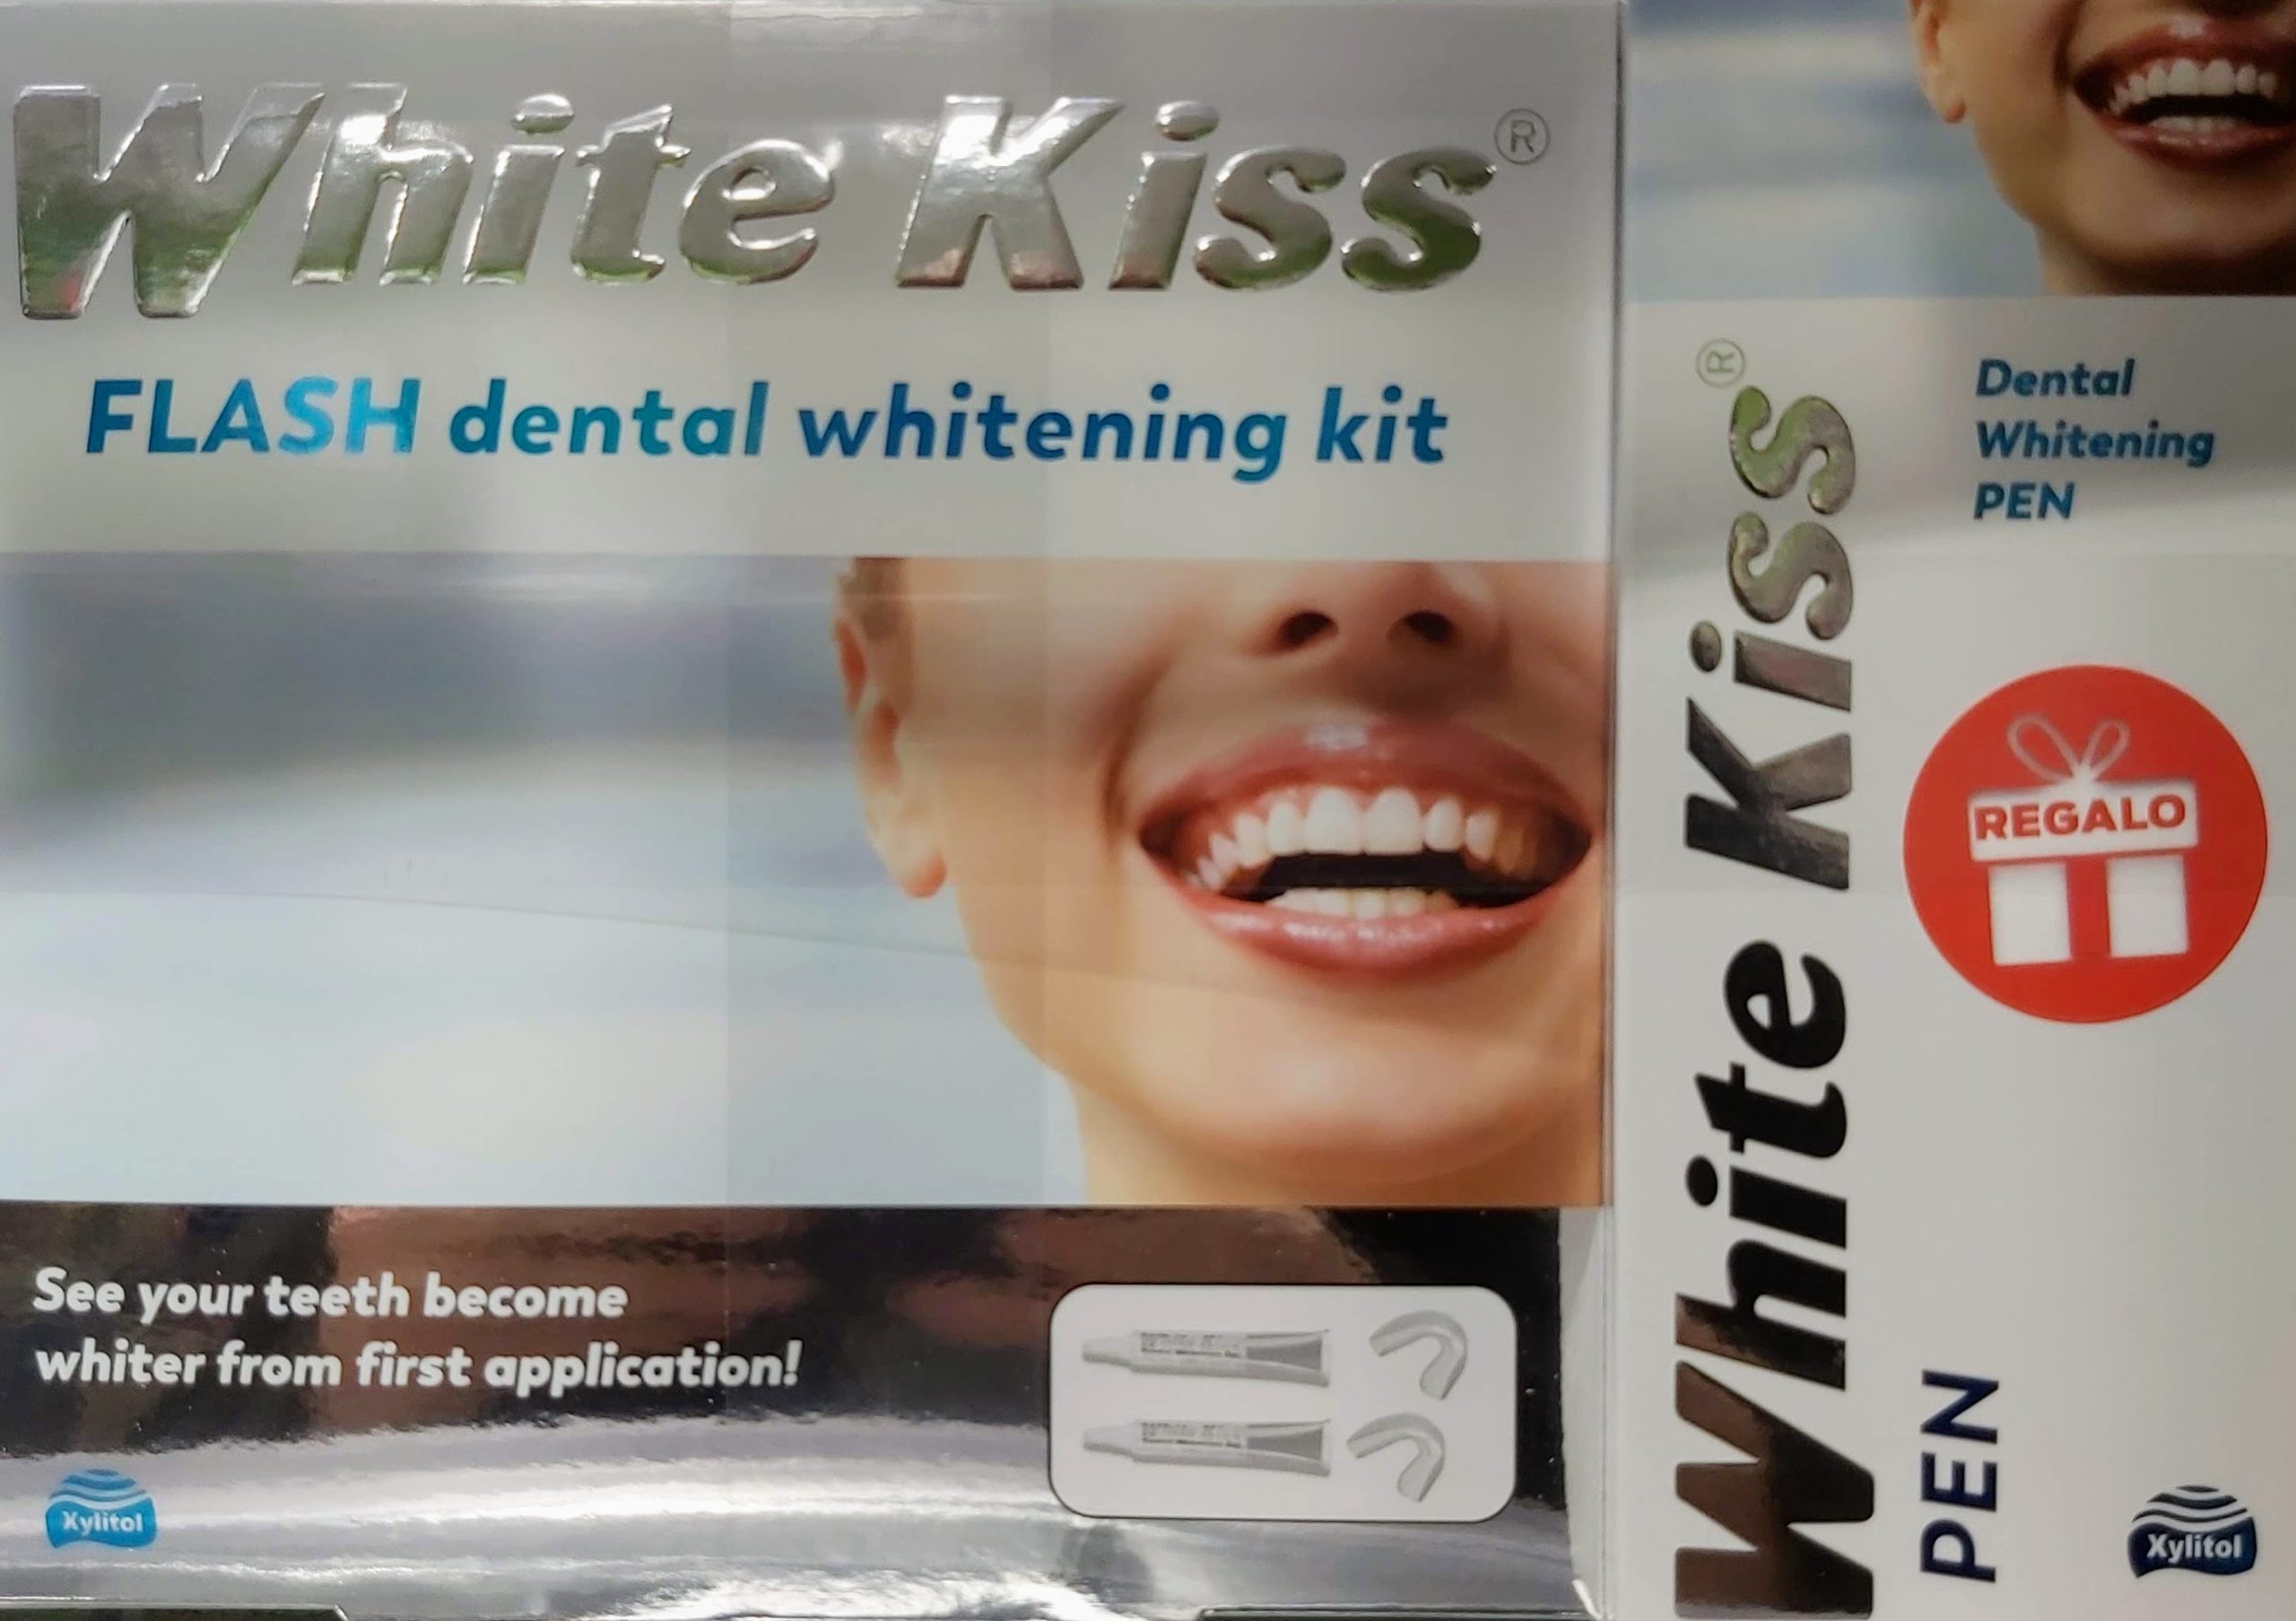 White Kiss Flash Kit de blanqueamiento dental para mejorar el aspecto de tu esmalte dental